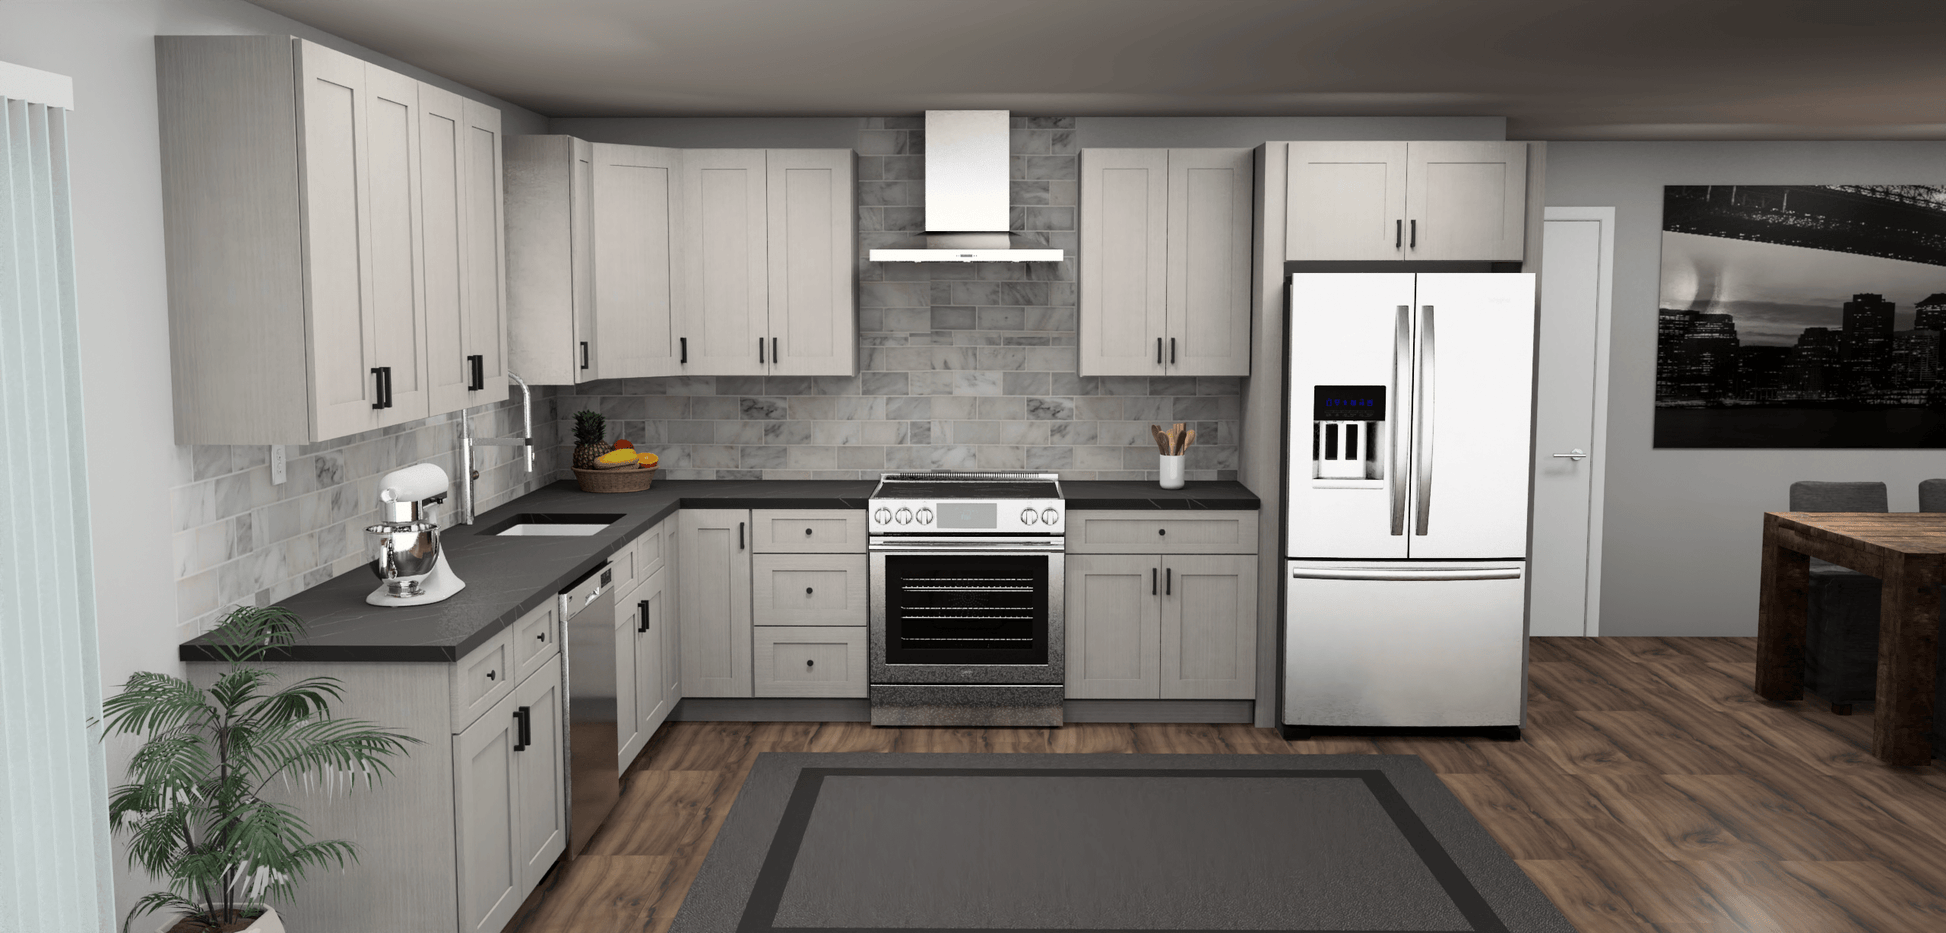 Fabuwood Allure Galaxy Horizon 11 x 13 L Shaped Kitchen Front Layout Photo